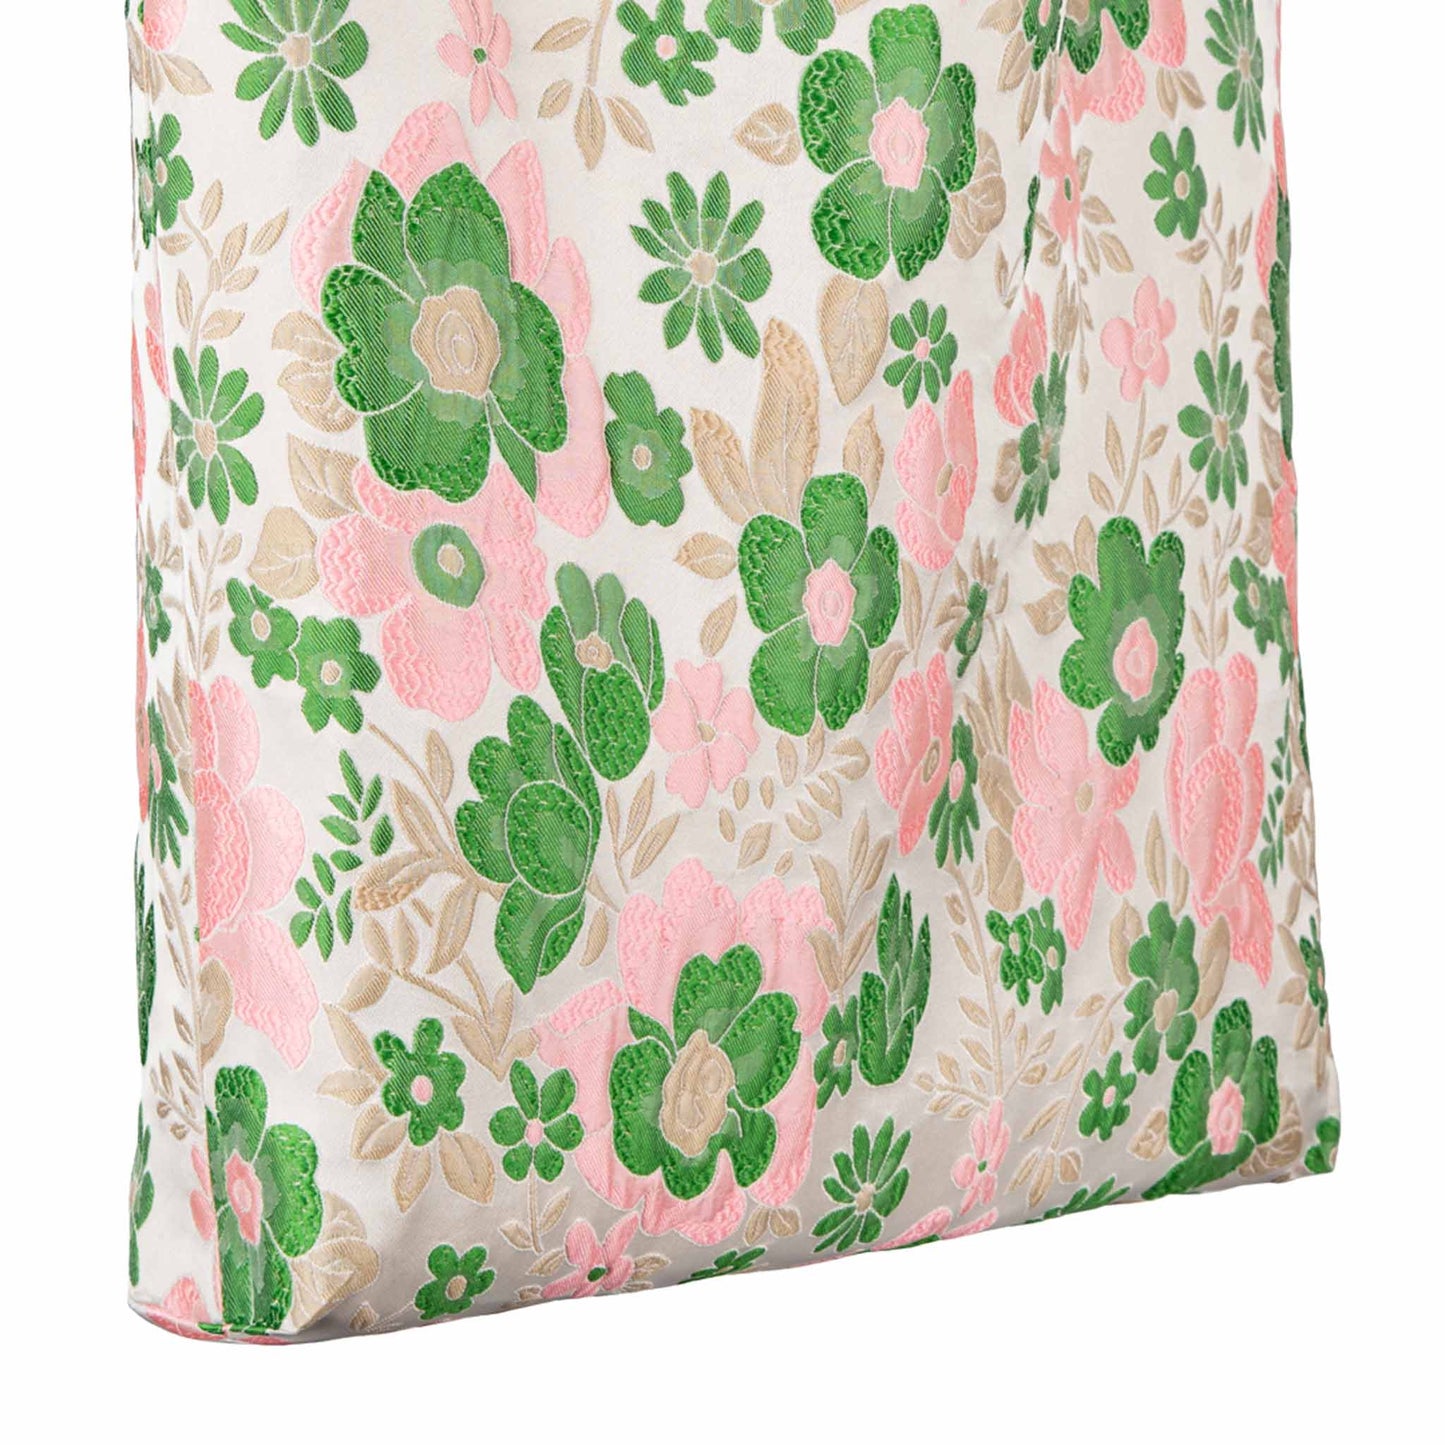 Dagny - - Green Pink Flowers - #364-714/Bag - Koloni – Kolonicopenhagen